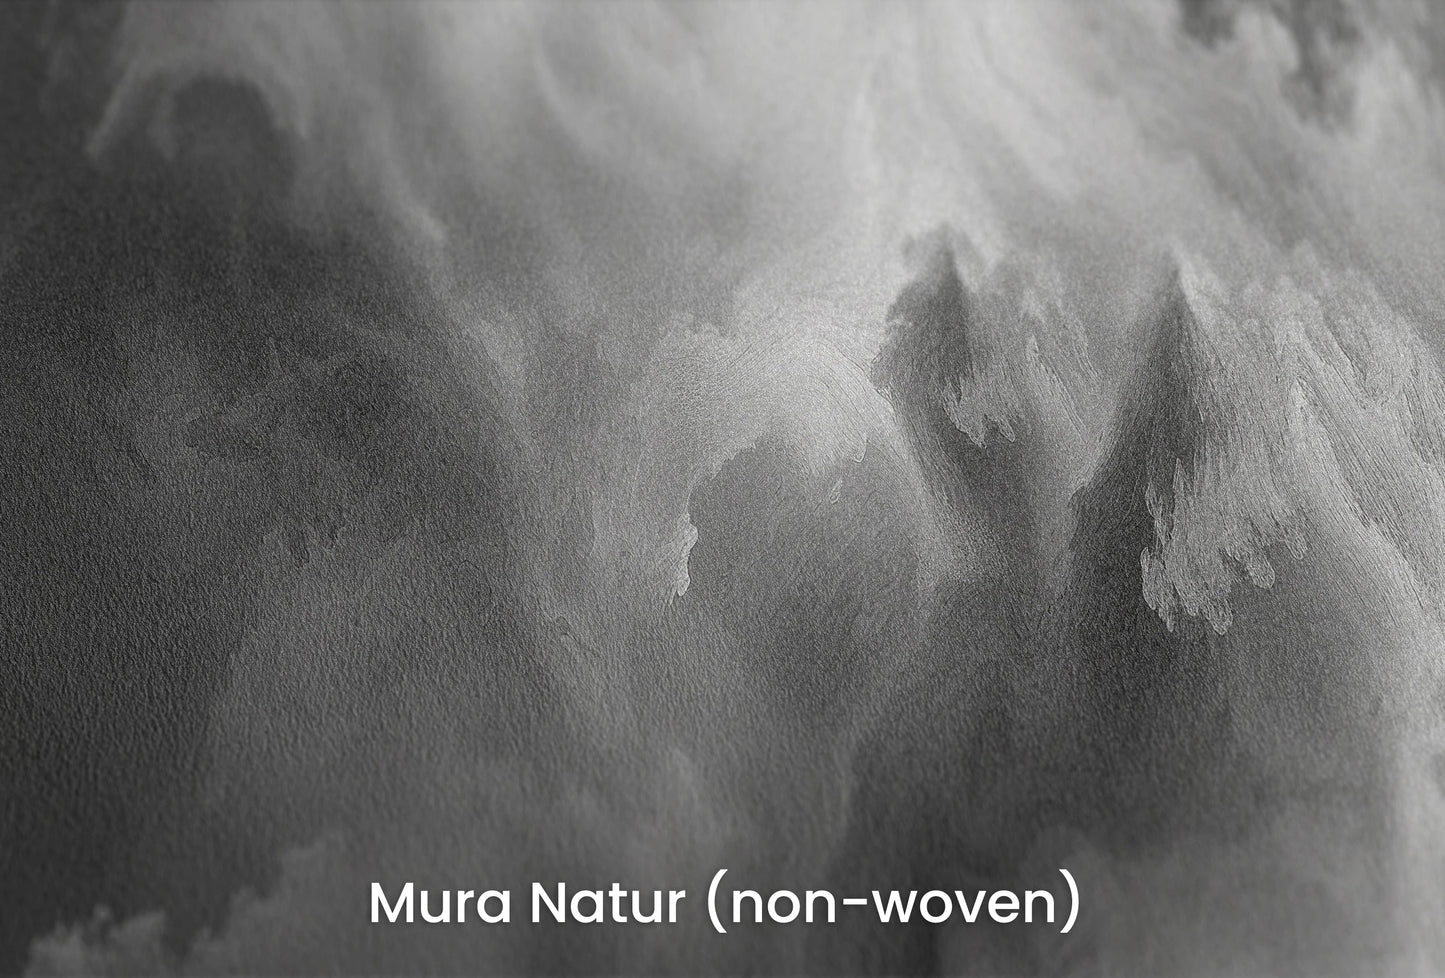 Zbliżenie na artystyczną fototapetę o nazwie Abstract Storm na podłożu Mura Natur (non-woven) - naturalne i ekologiczne podłoże.